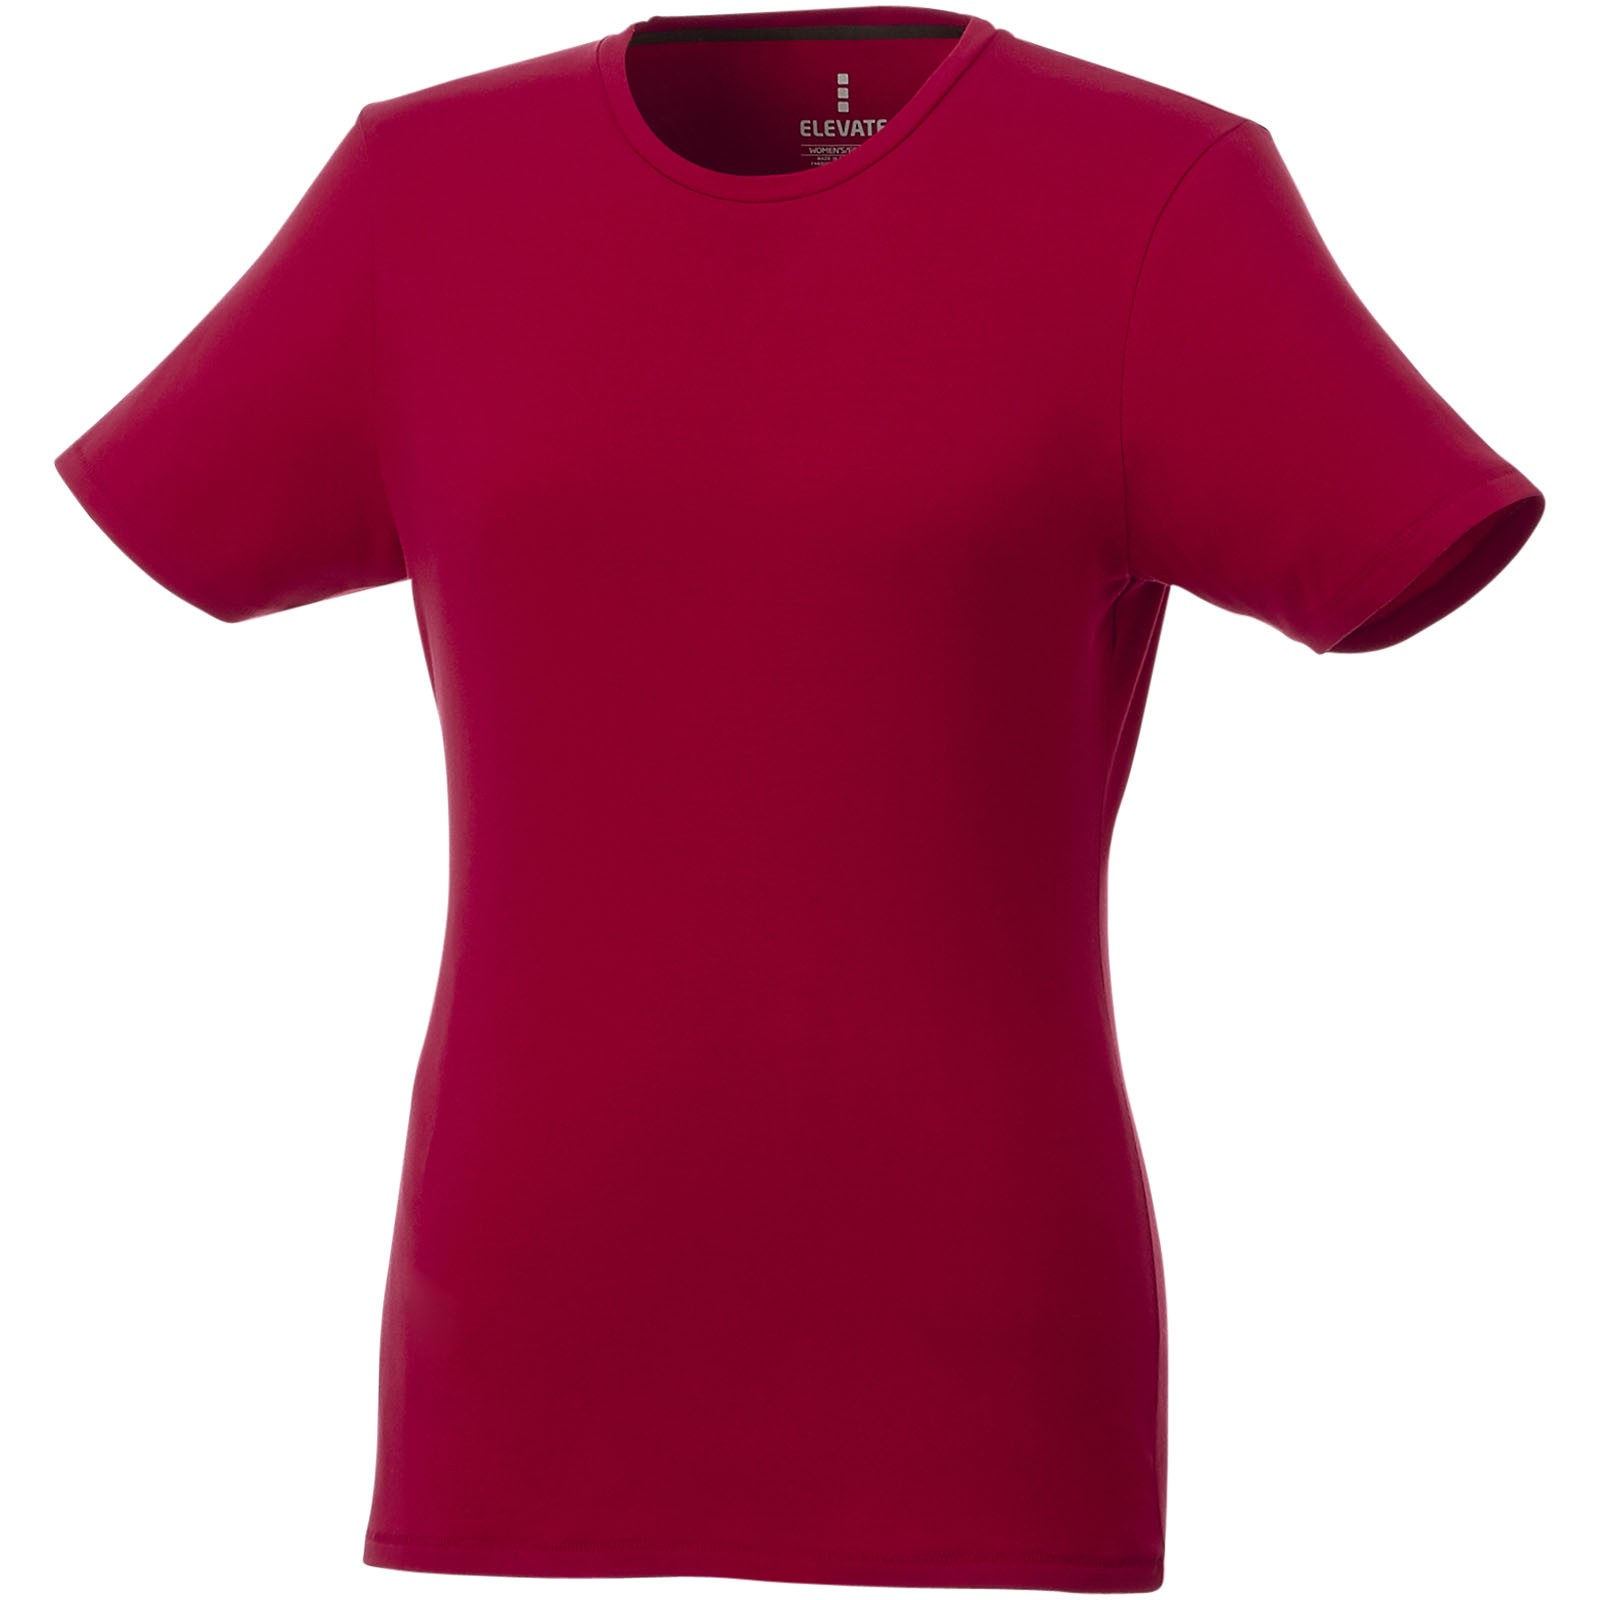 Camisetade manga corta orgánica para mujer "Balfour" - Rojo / XL